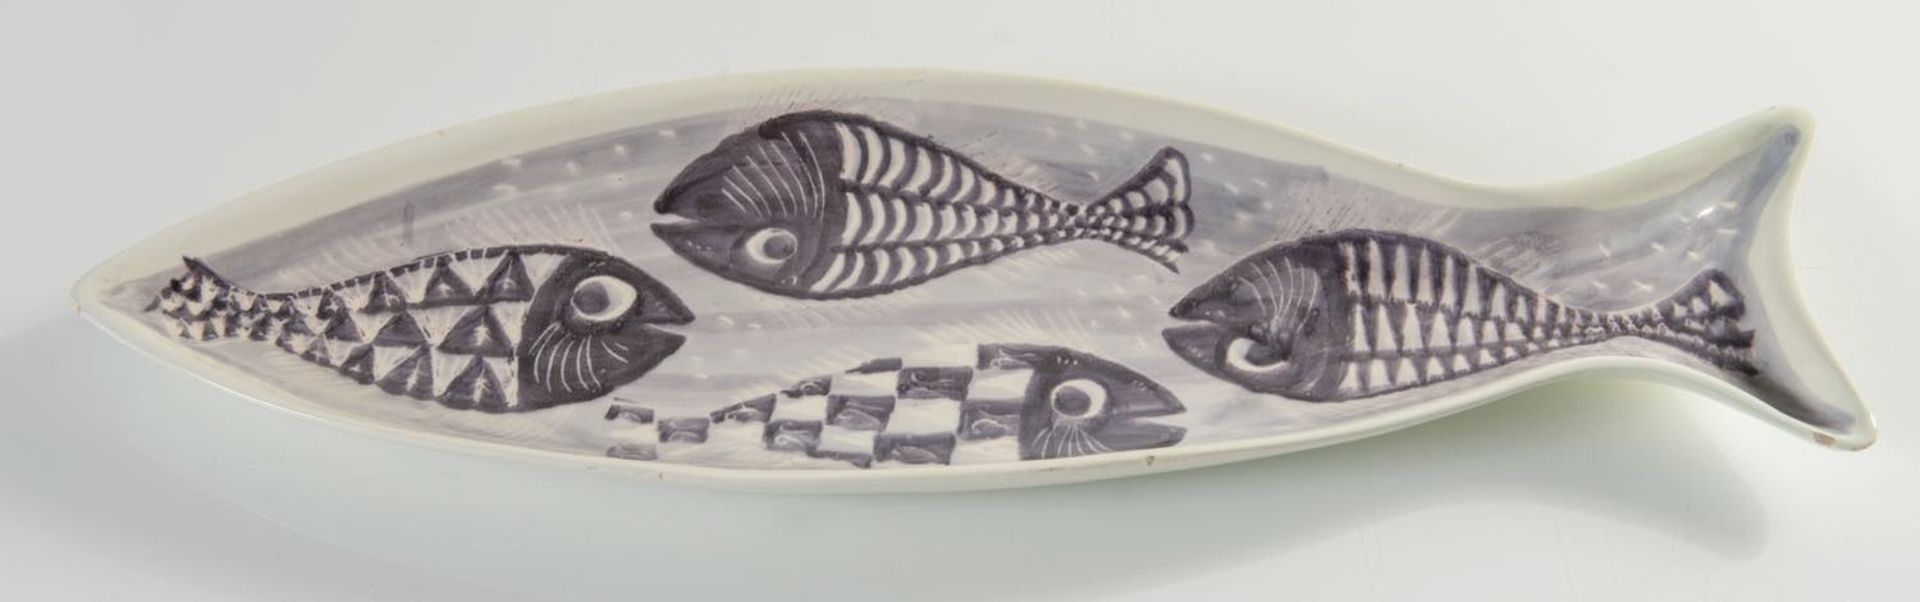 Alessio Tasca, Vassoio in ceramica a forma di pesce, Vicenza, Anni ‘50/'60.Dipinto a mano in